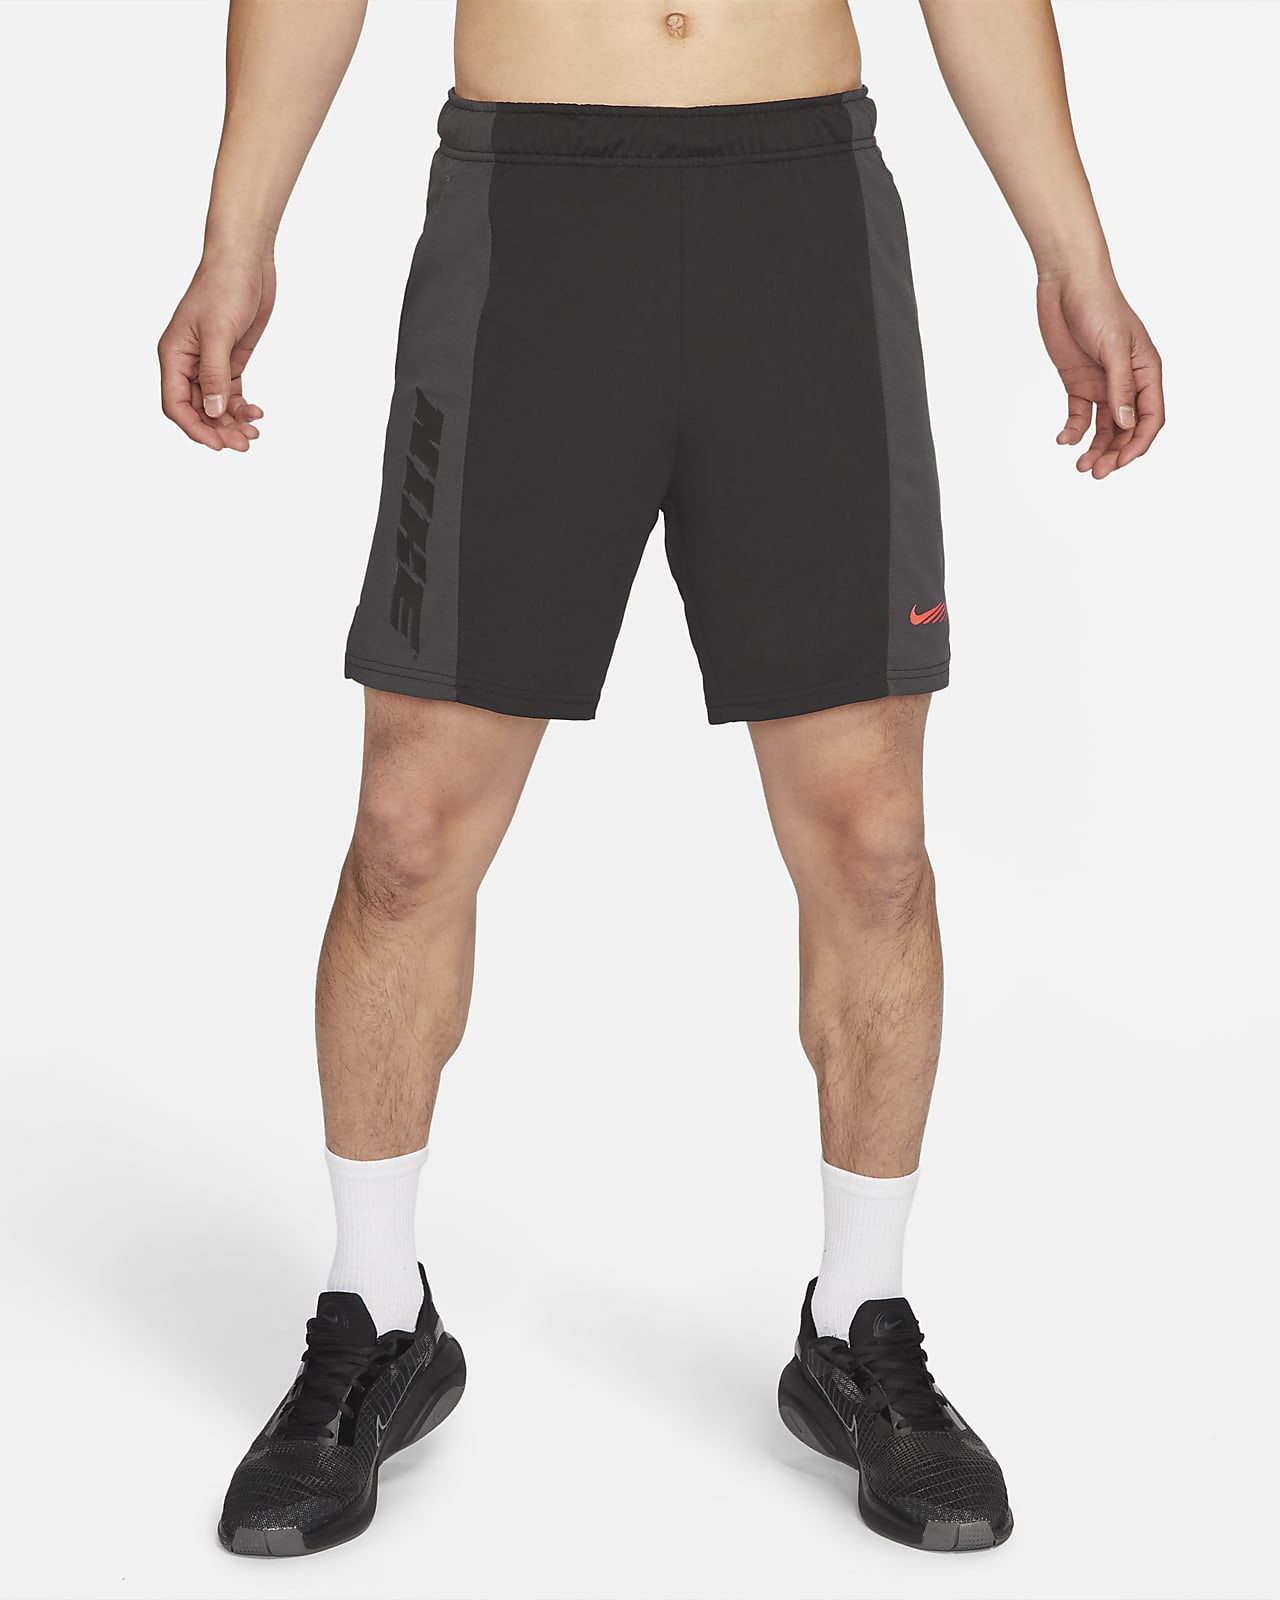 Nike Dri-FIT Men's Training Shorts. Nike ID